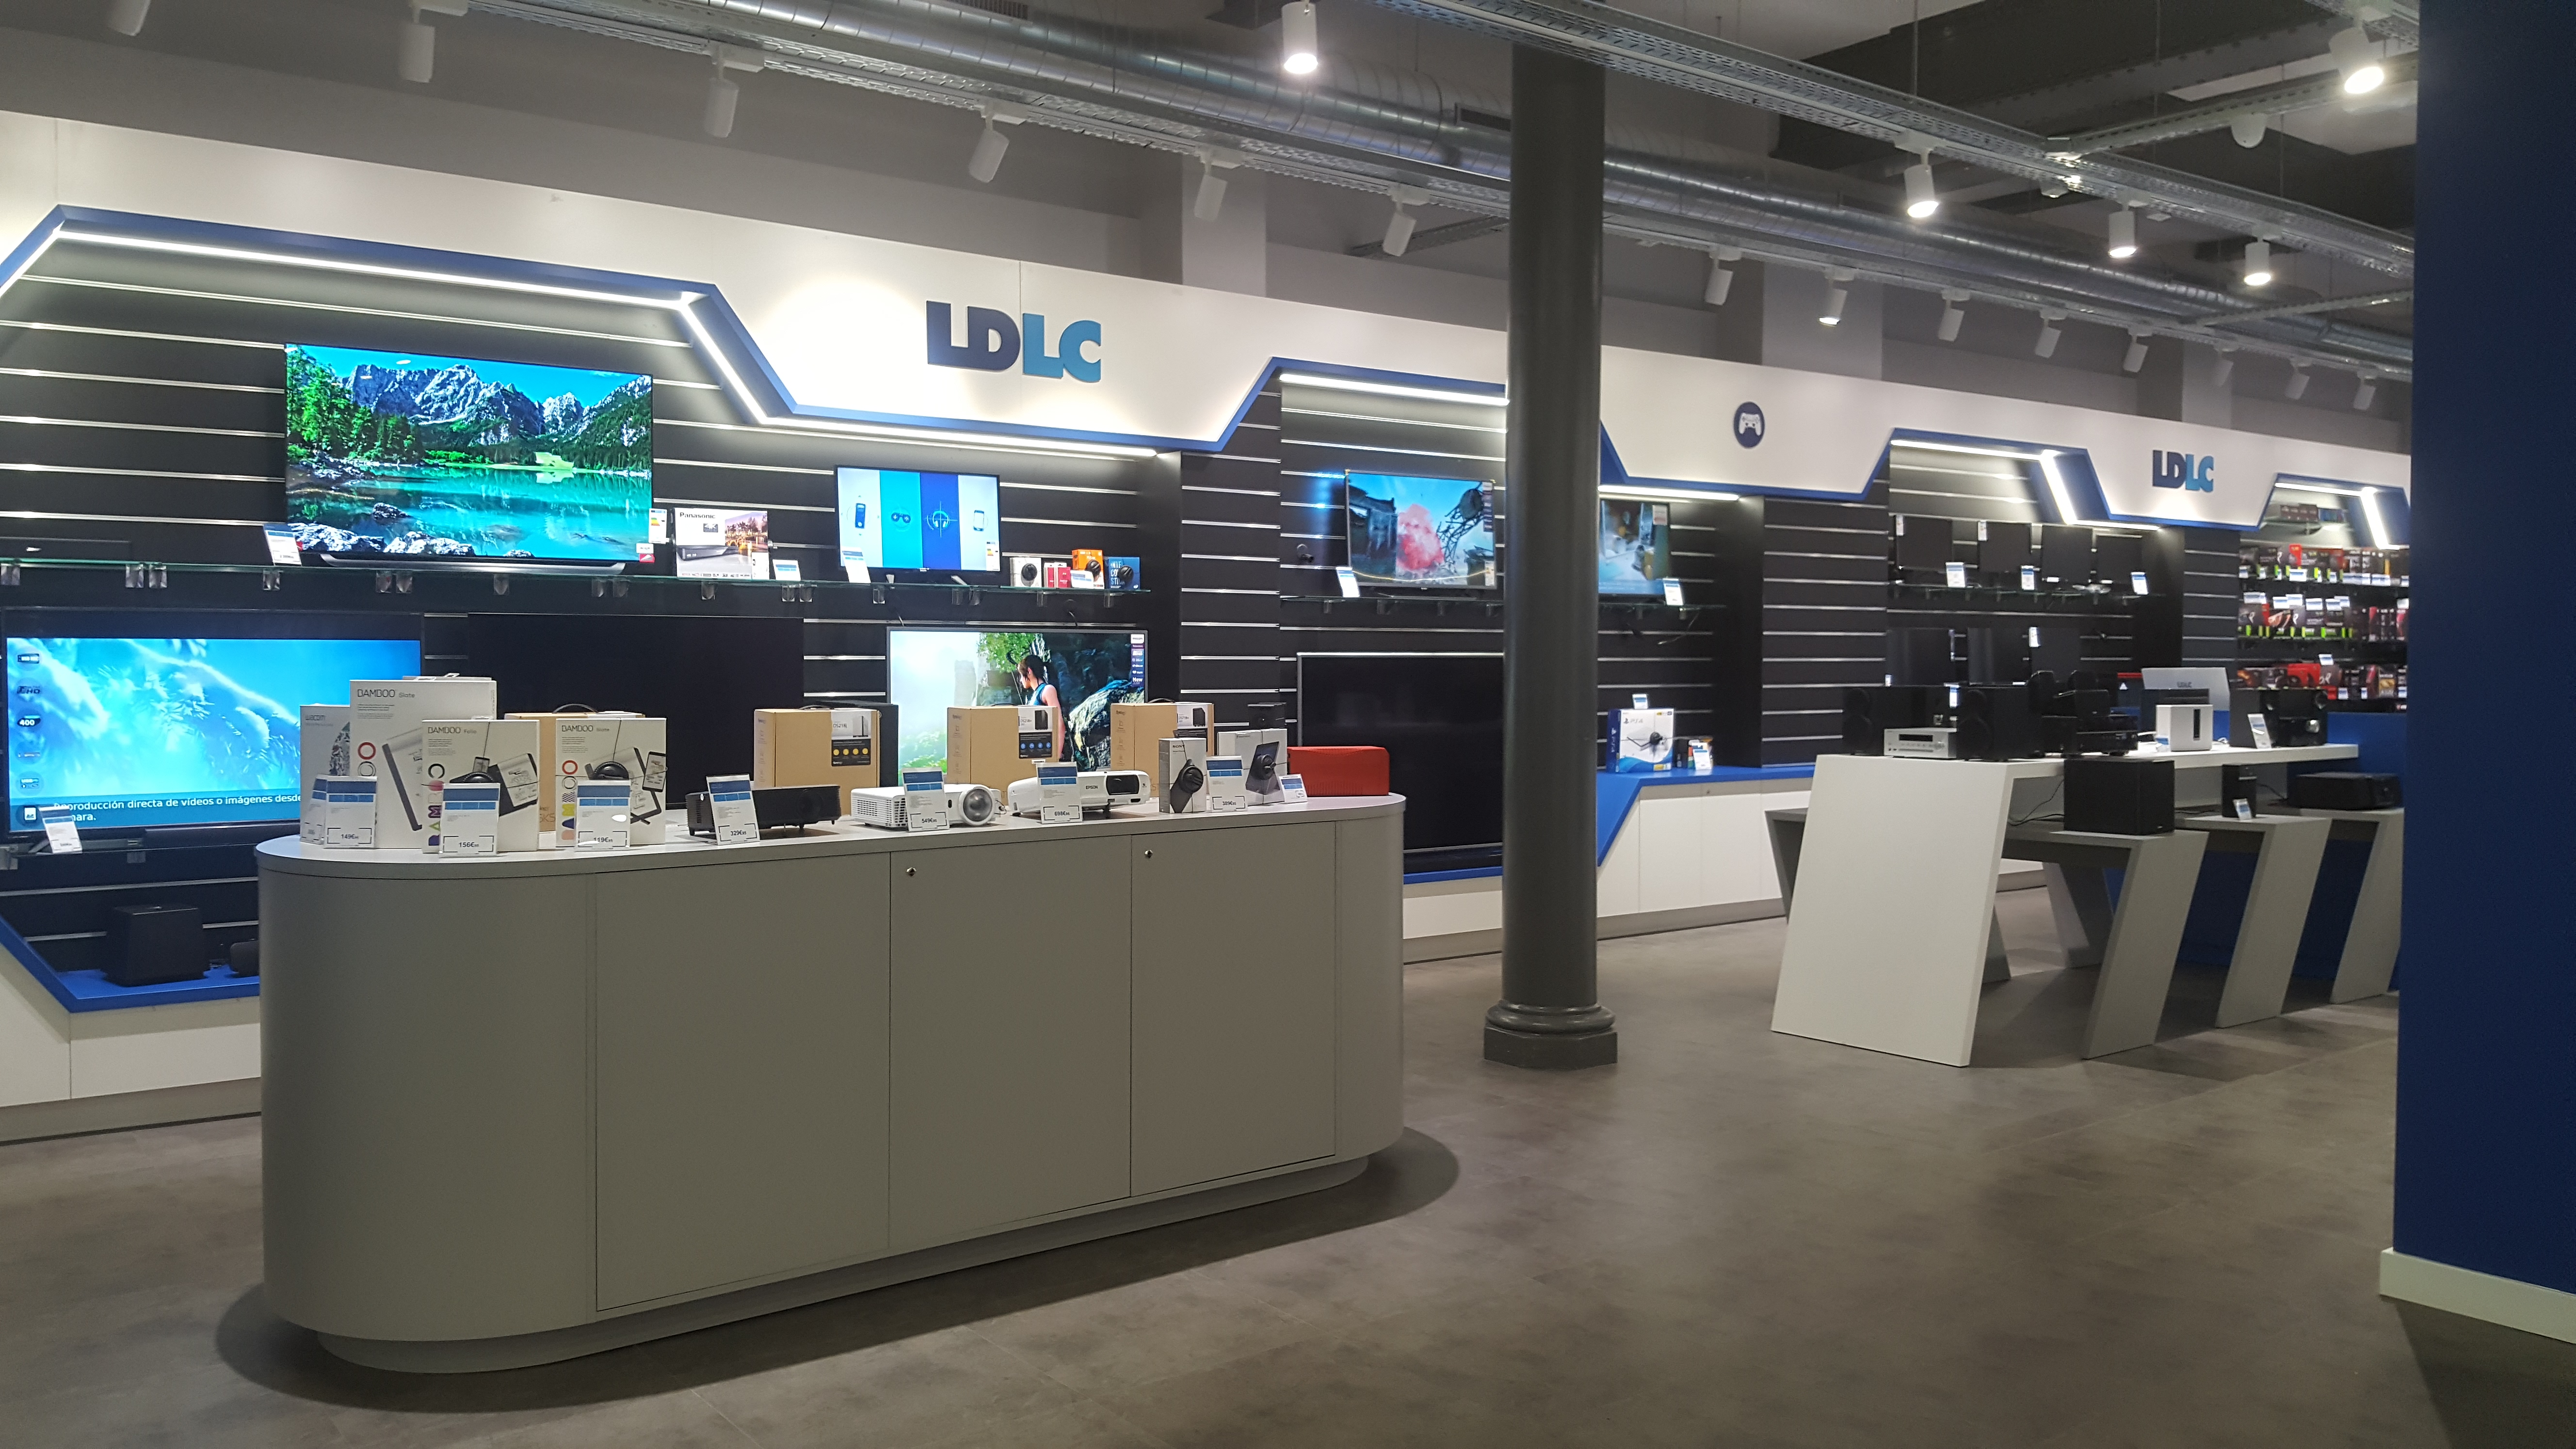 LDLC cesa operaciones en España y cierra sus dos tiendas físicas de Madrid y Barcelona